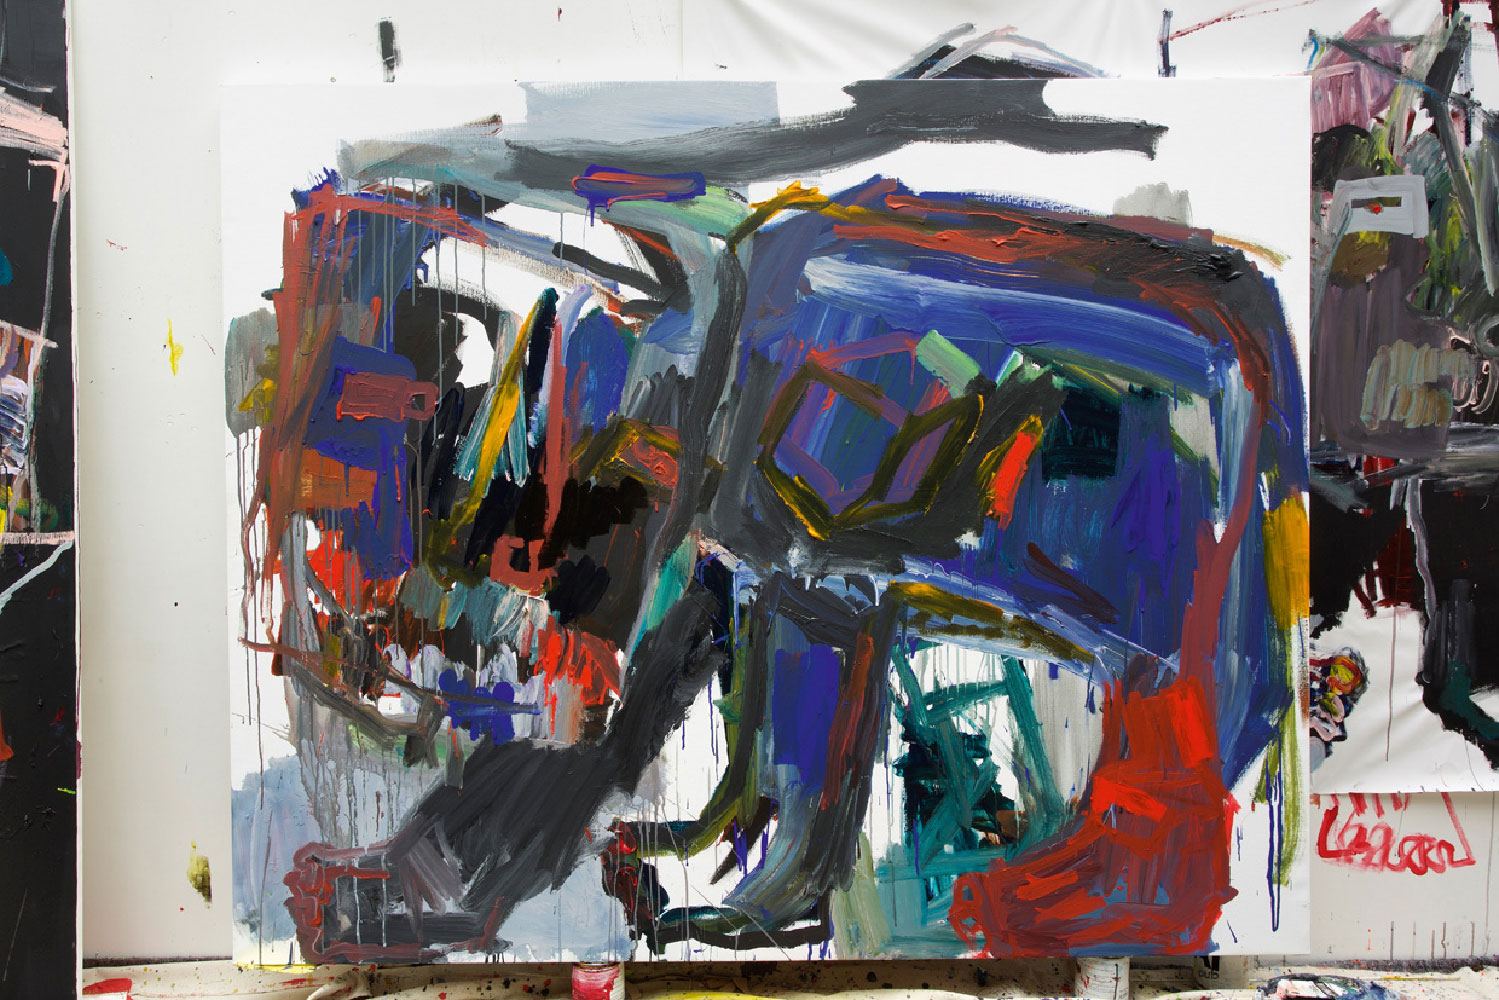 Bad Dog and Playful Color Technique mixte sur toile.
180 x 220 cm
2016.
 
Toma-L ©